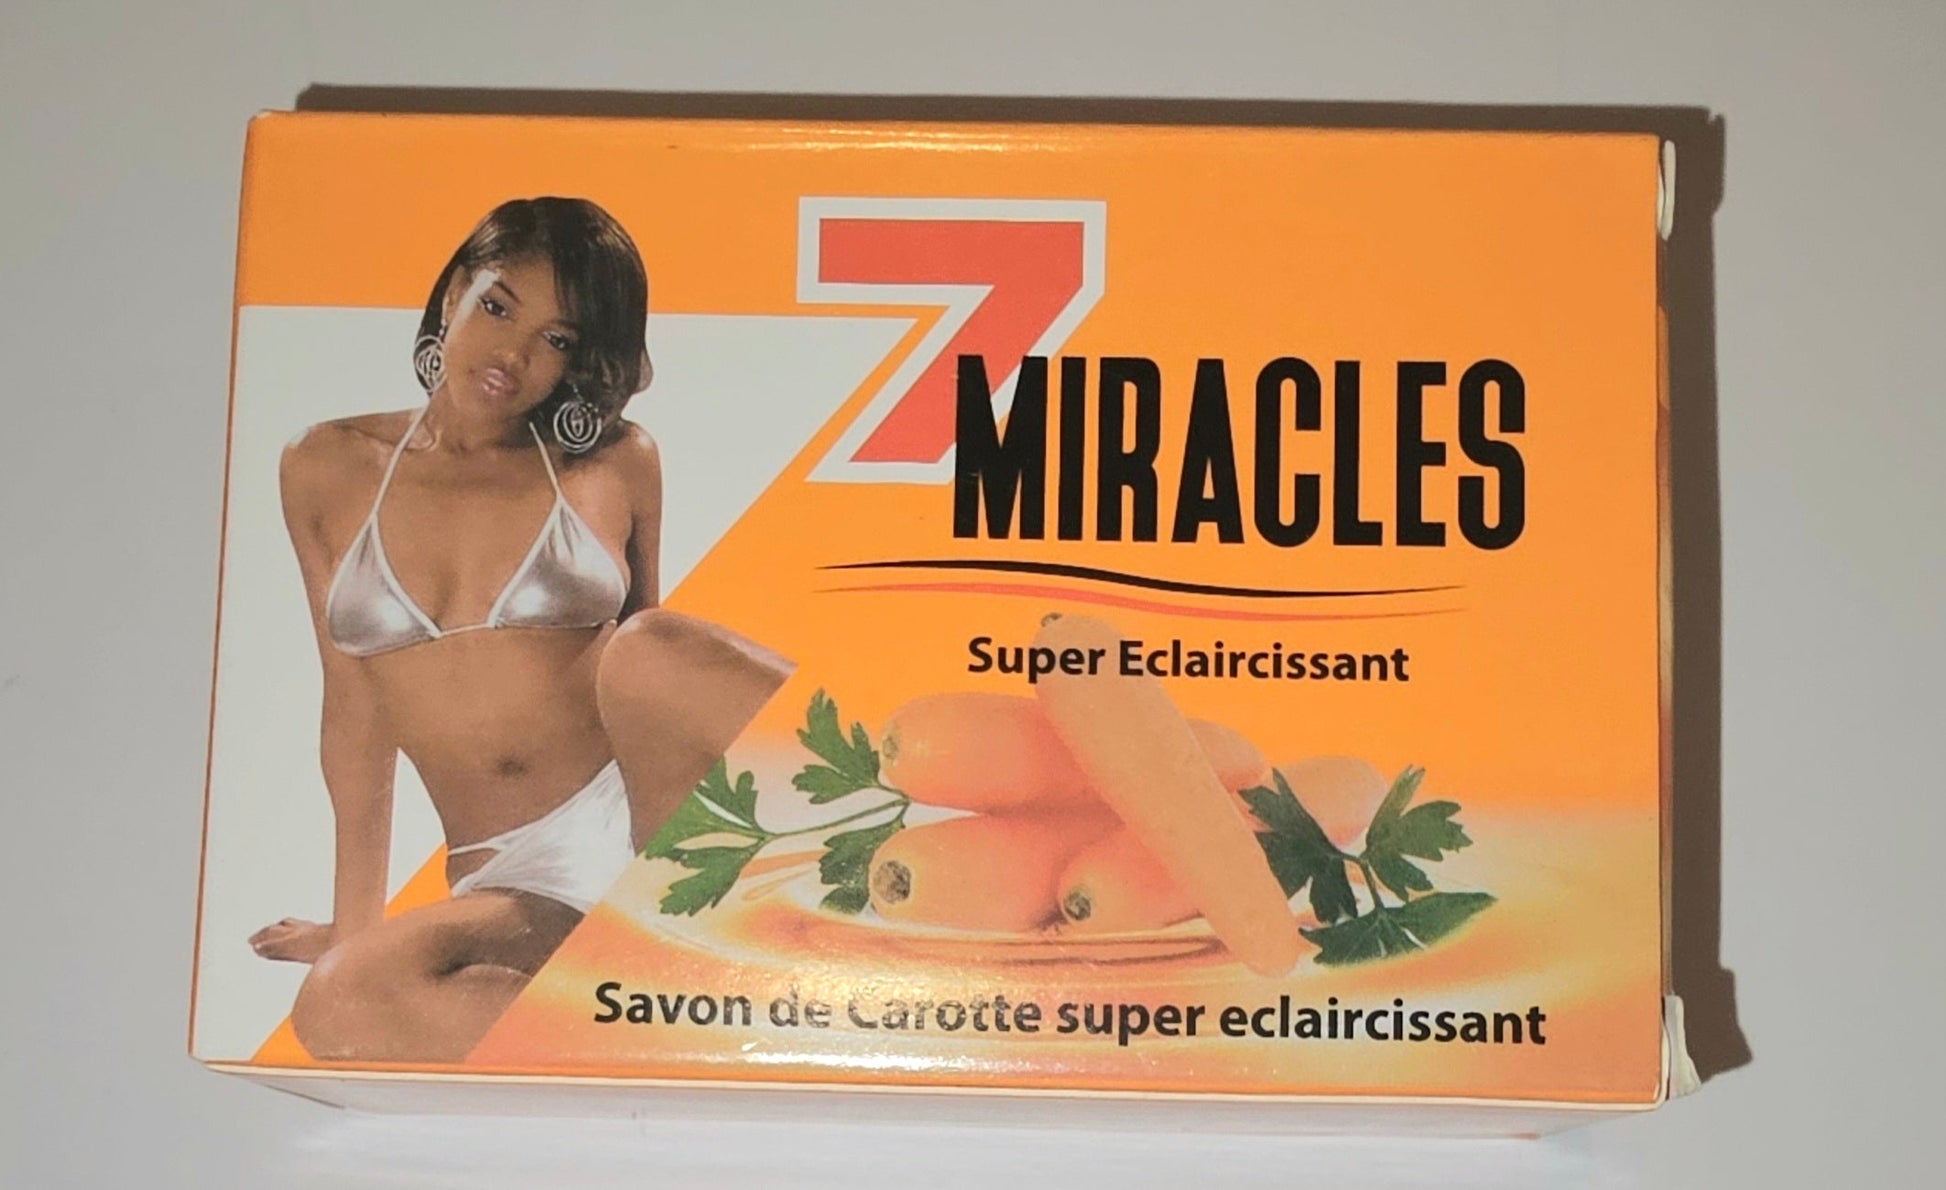 7 Miracles Sazon de Carotte / Carrot Soap